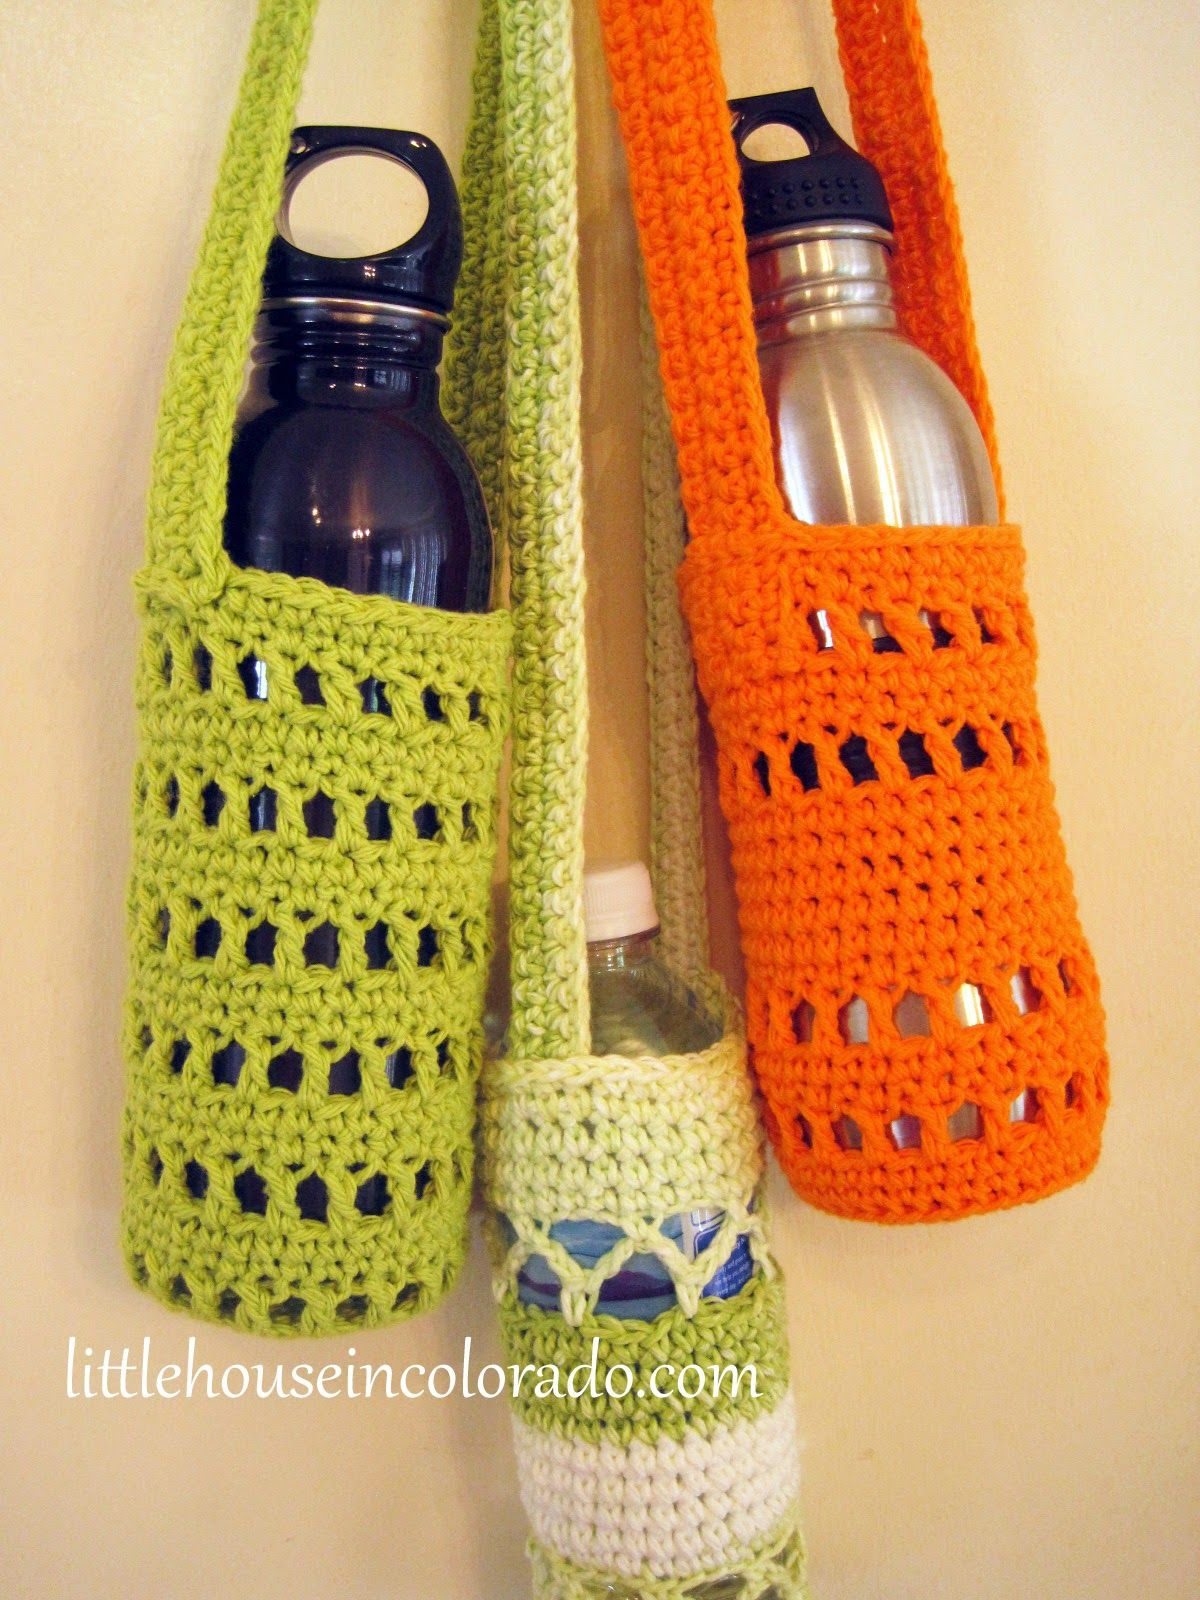 Crochet Bottle Holder Pattern Crochet Lanyard Wine Glass Holder Free Pattern Projects To Try